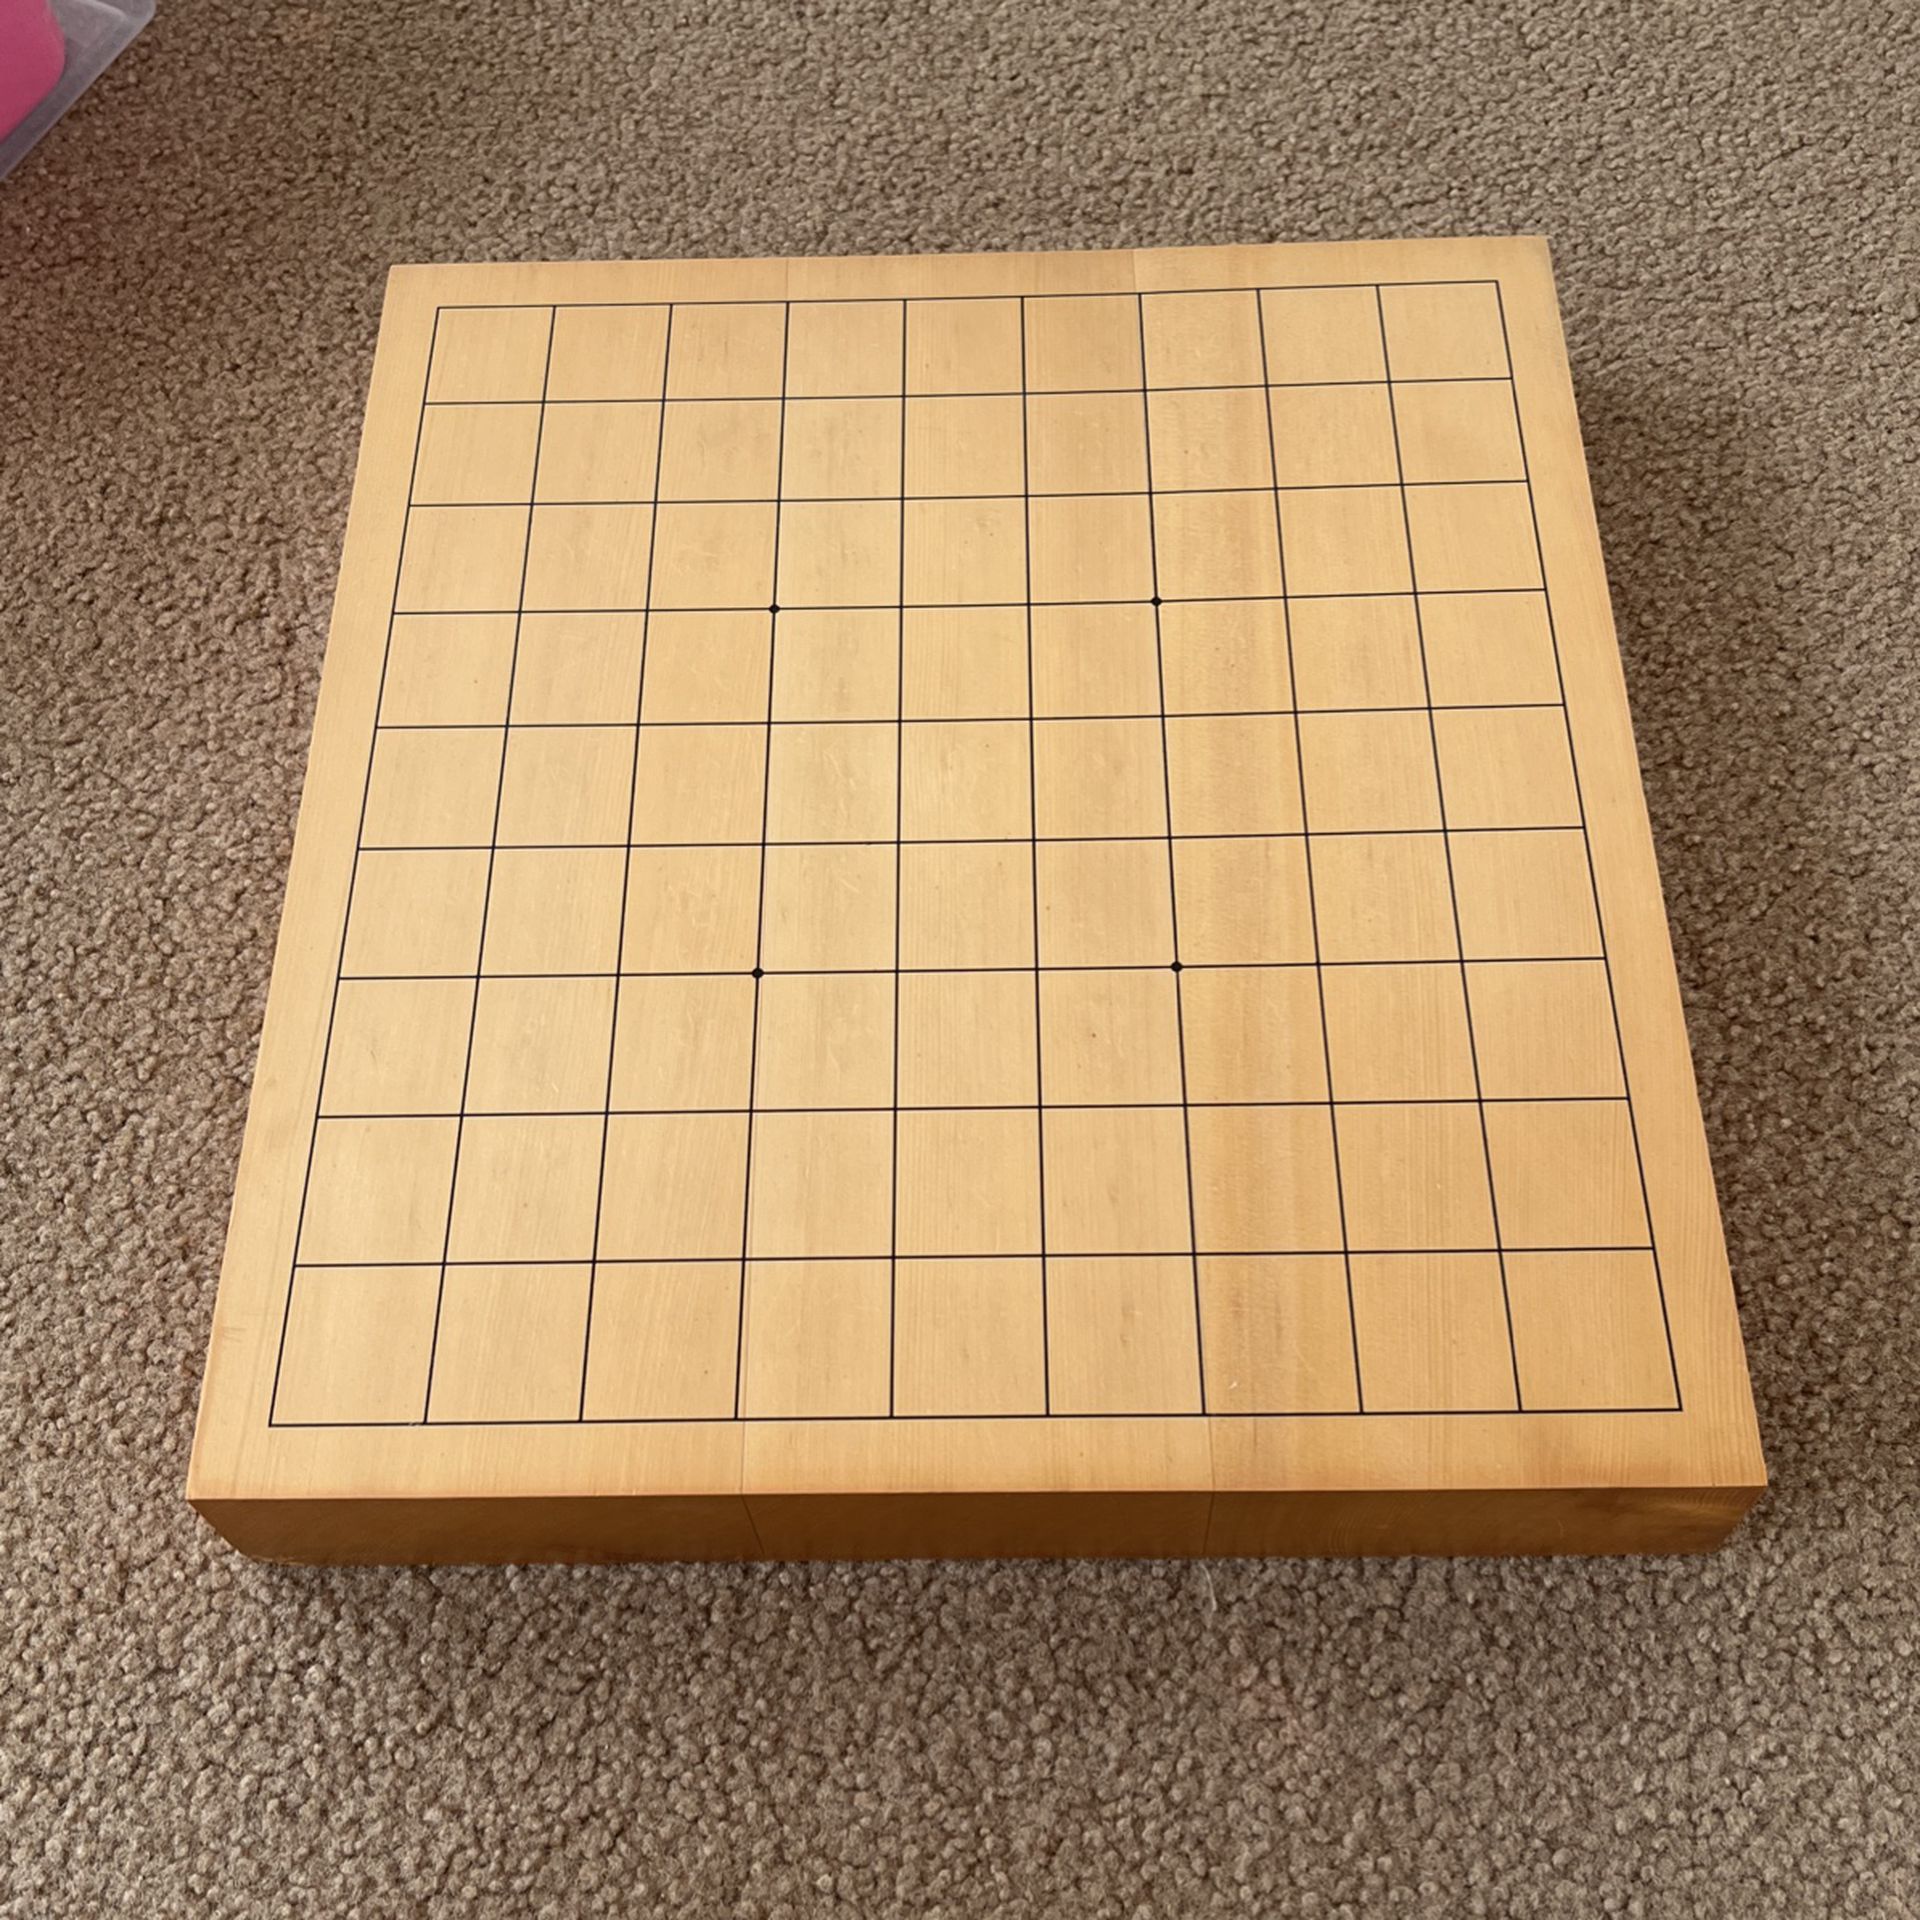 Shogi Board (Japanese Chess Board)